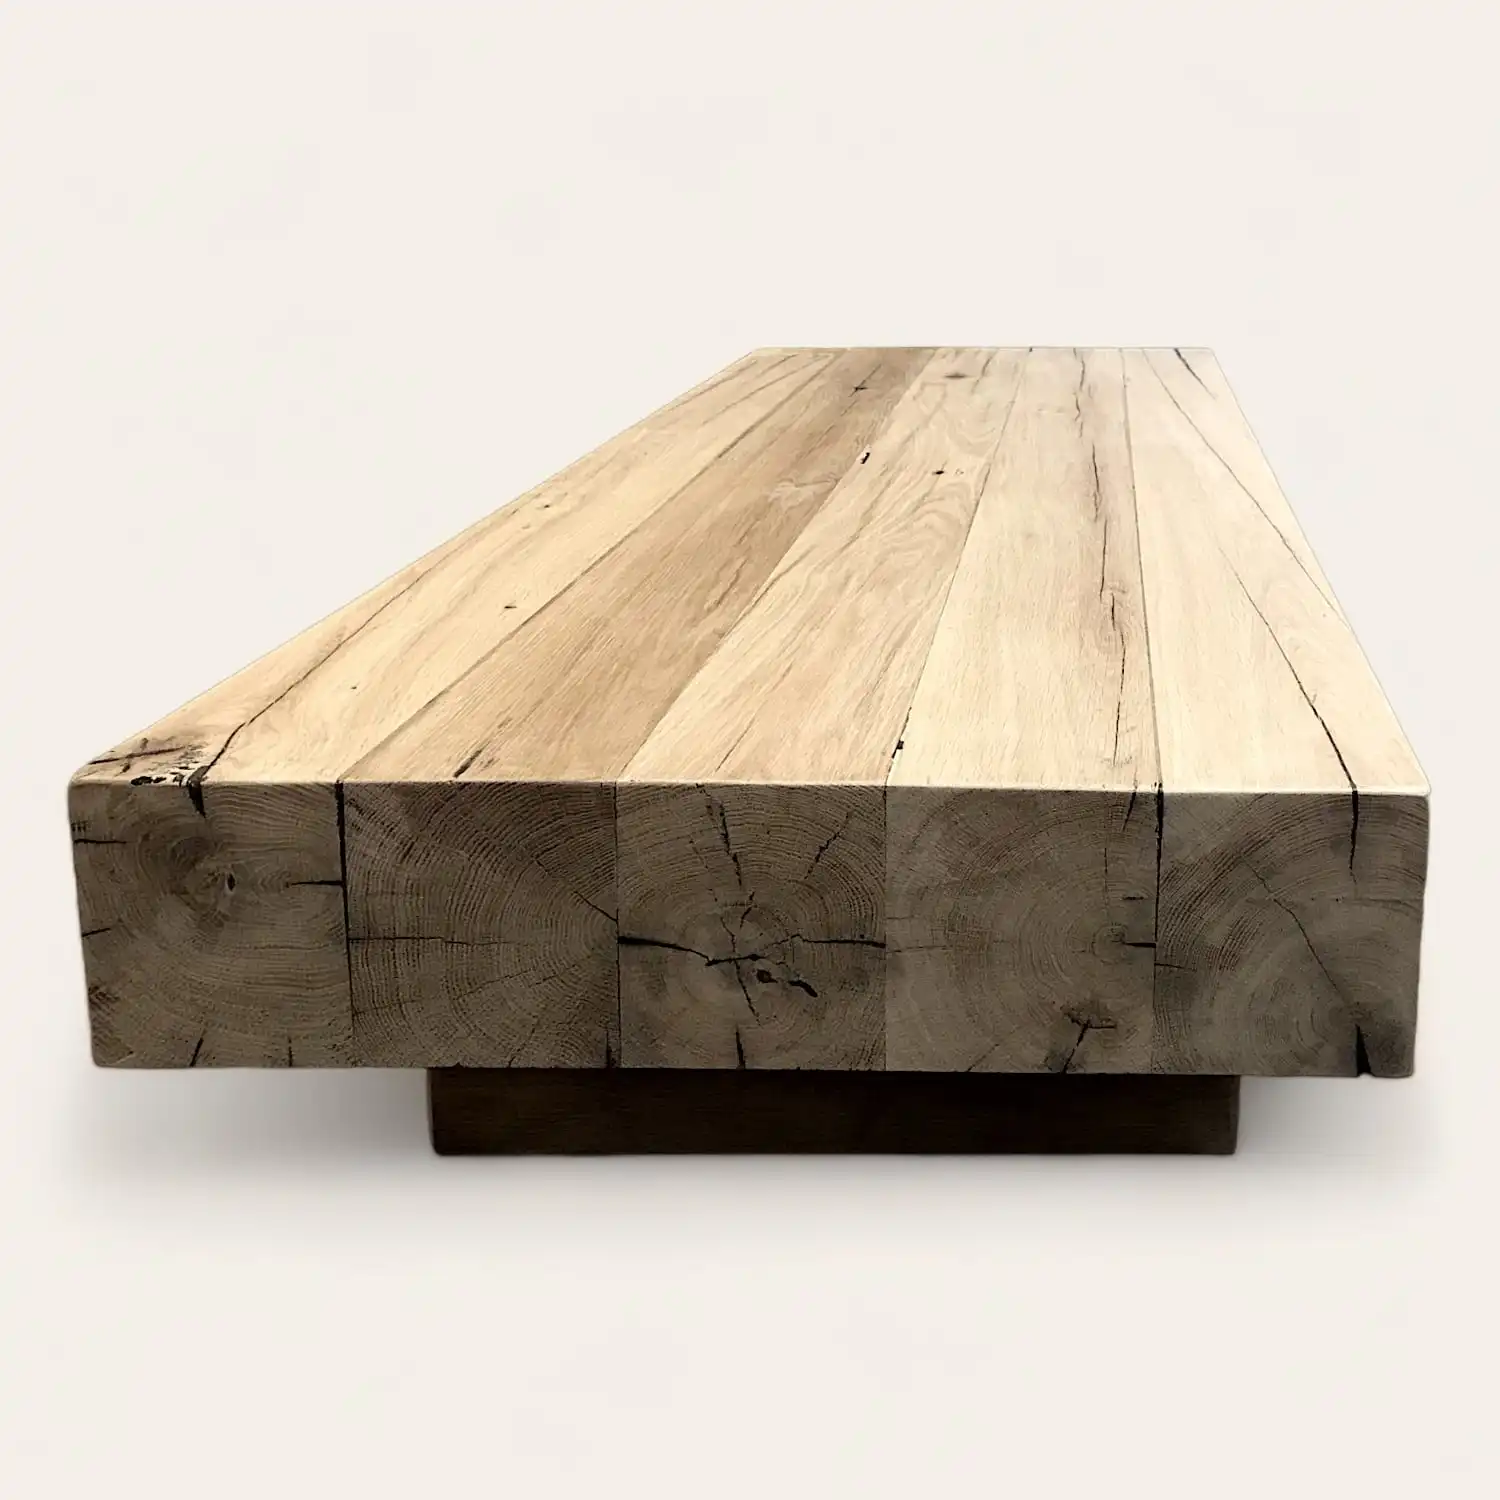  Une table basse en bois ancien sur fond blanc. 